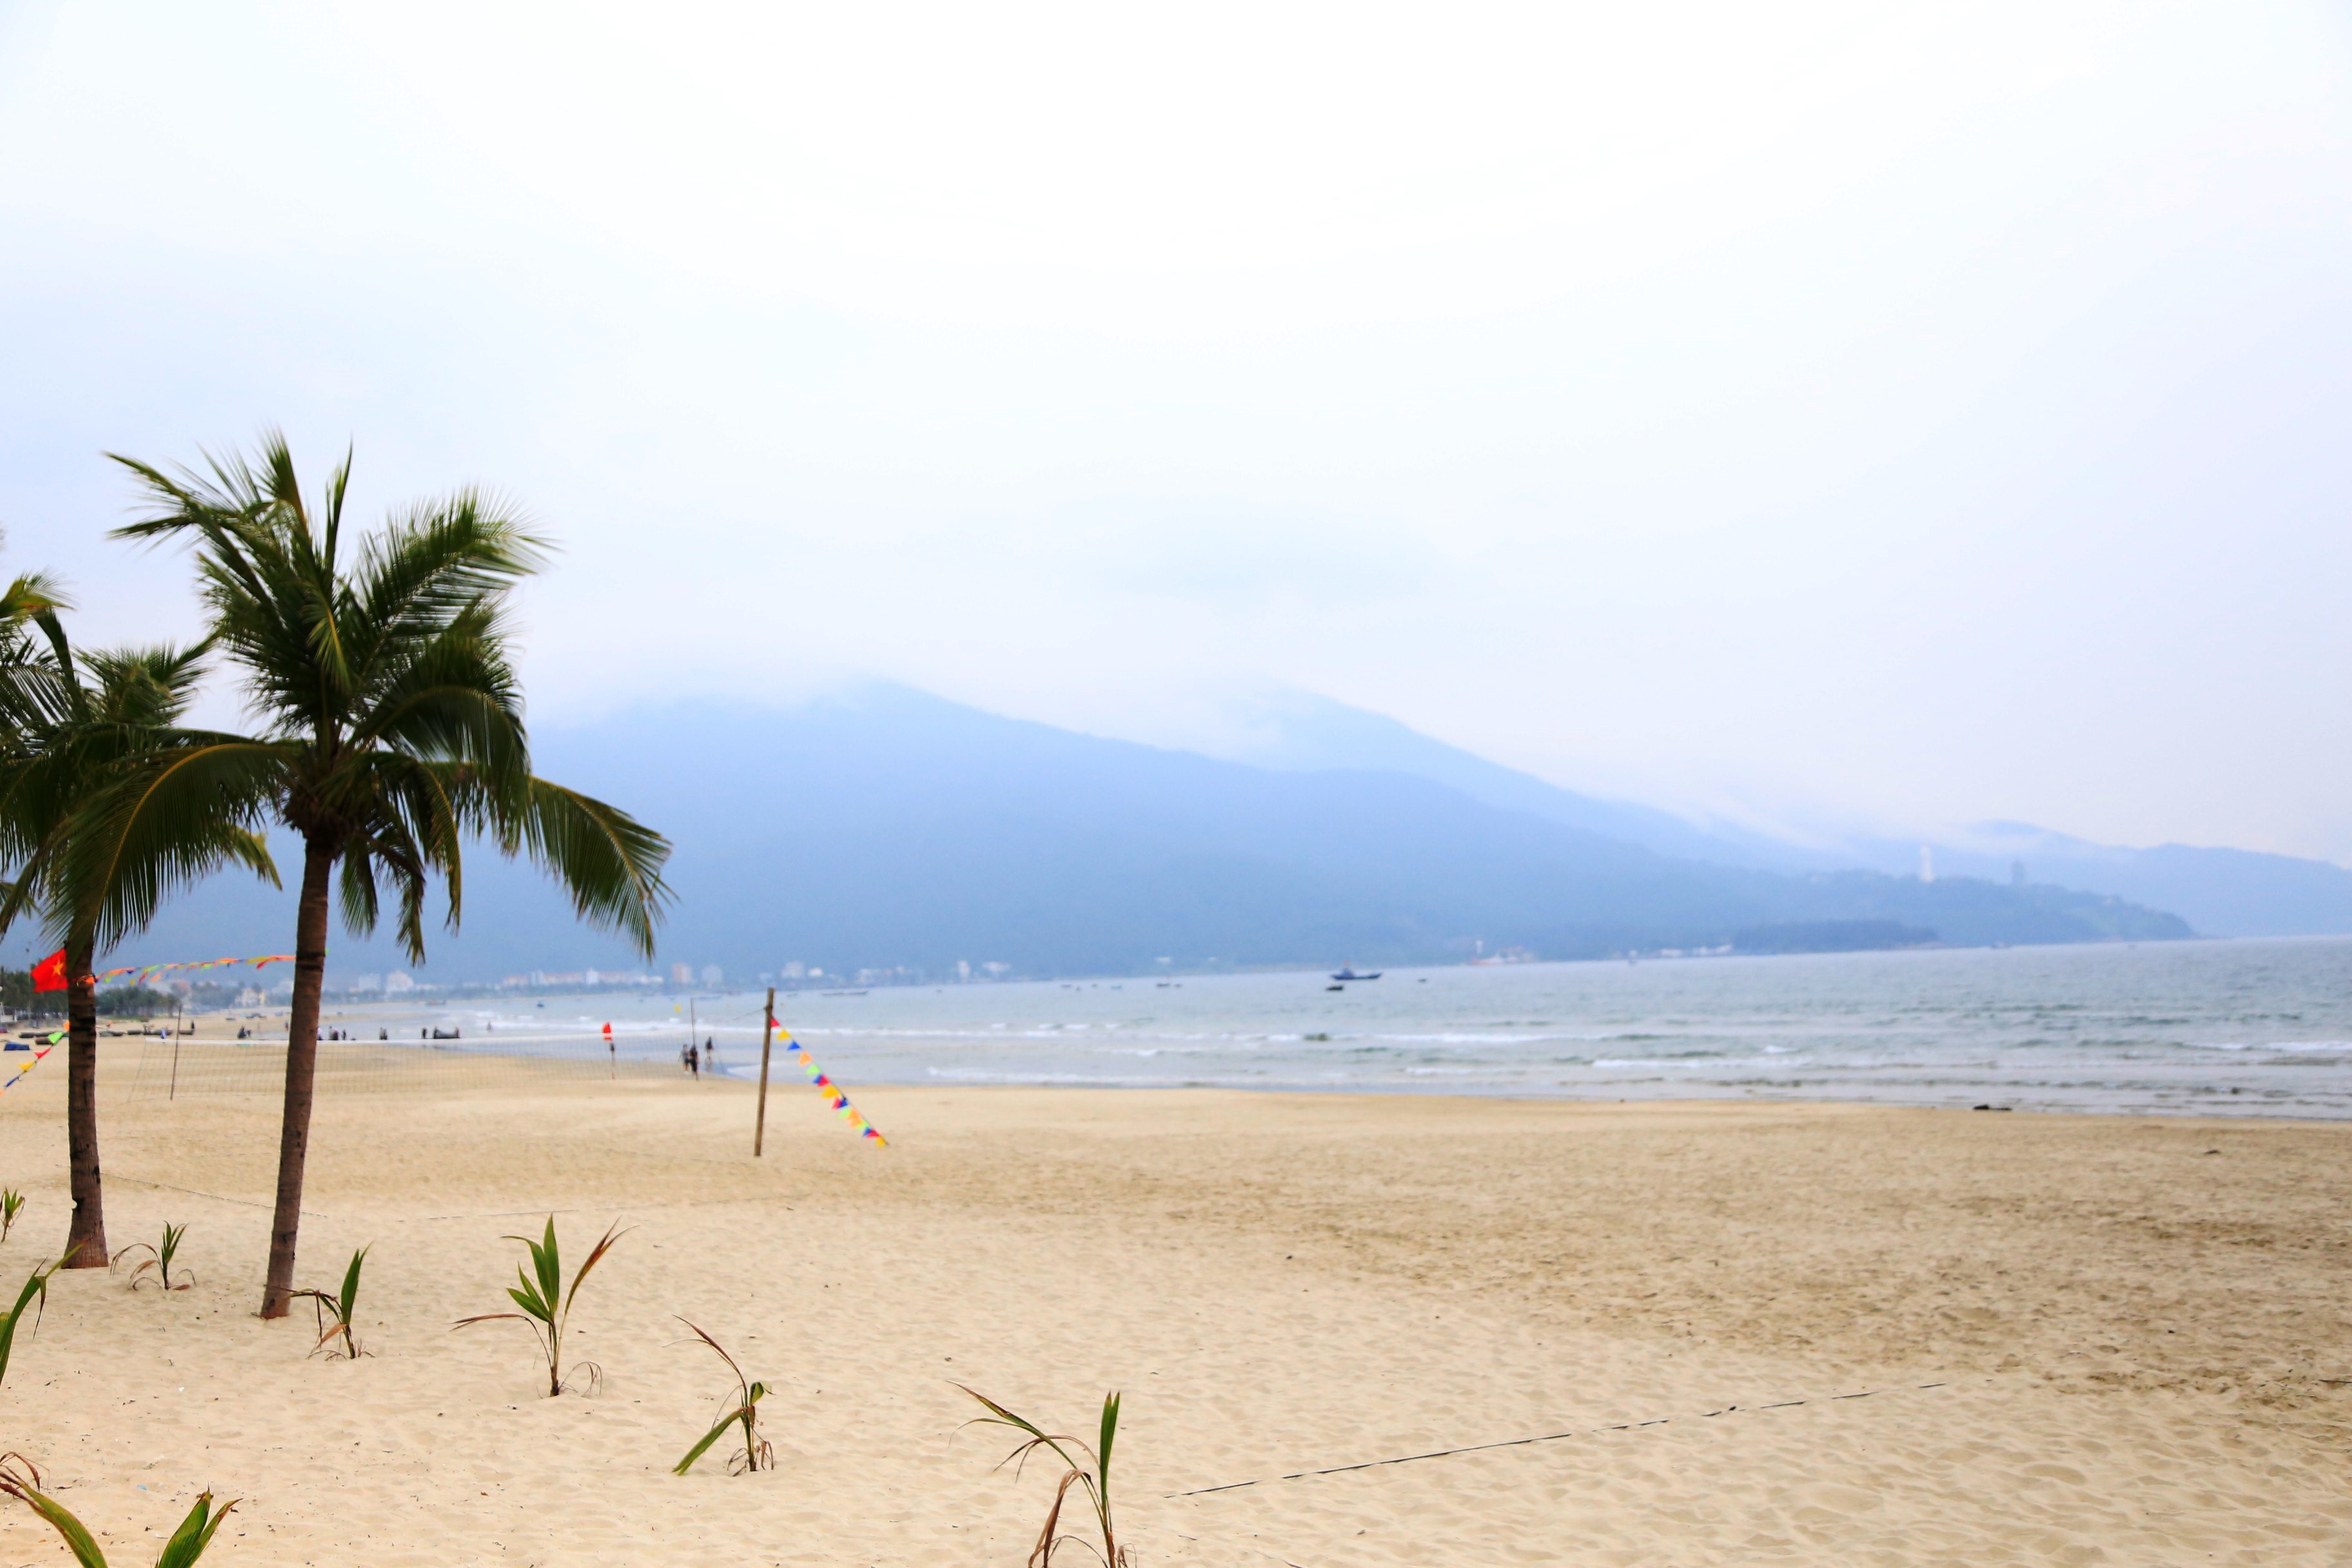 
Bãi biển trải dài dọc bán đảo Sơn Trà trước đây luôn đông khách thì giờ thưa vắng dù bắt đầu vào mùa du lịch
